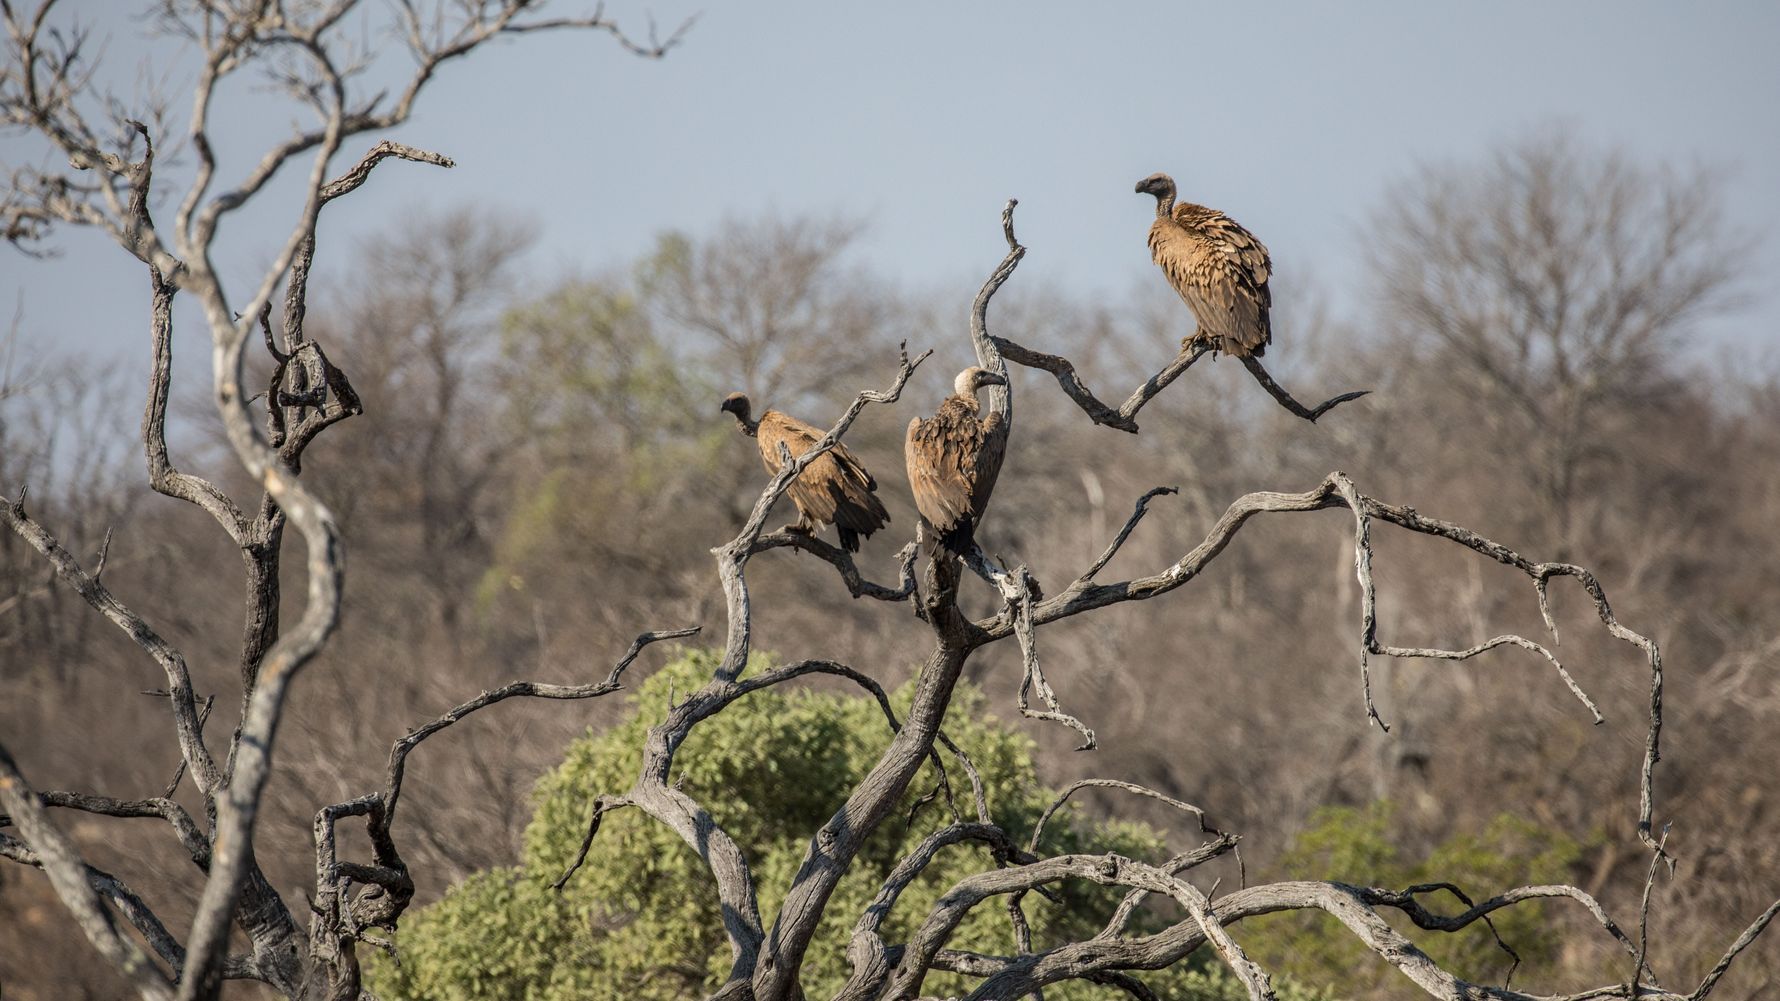 Aves de rapina - o que são, principais características e espécies do grupo